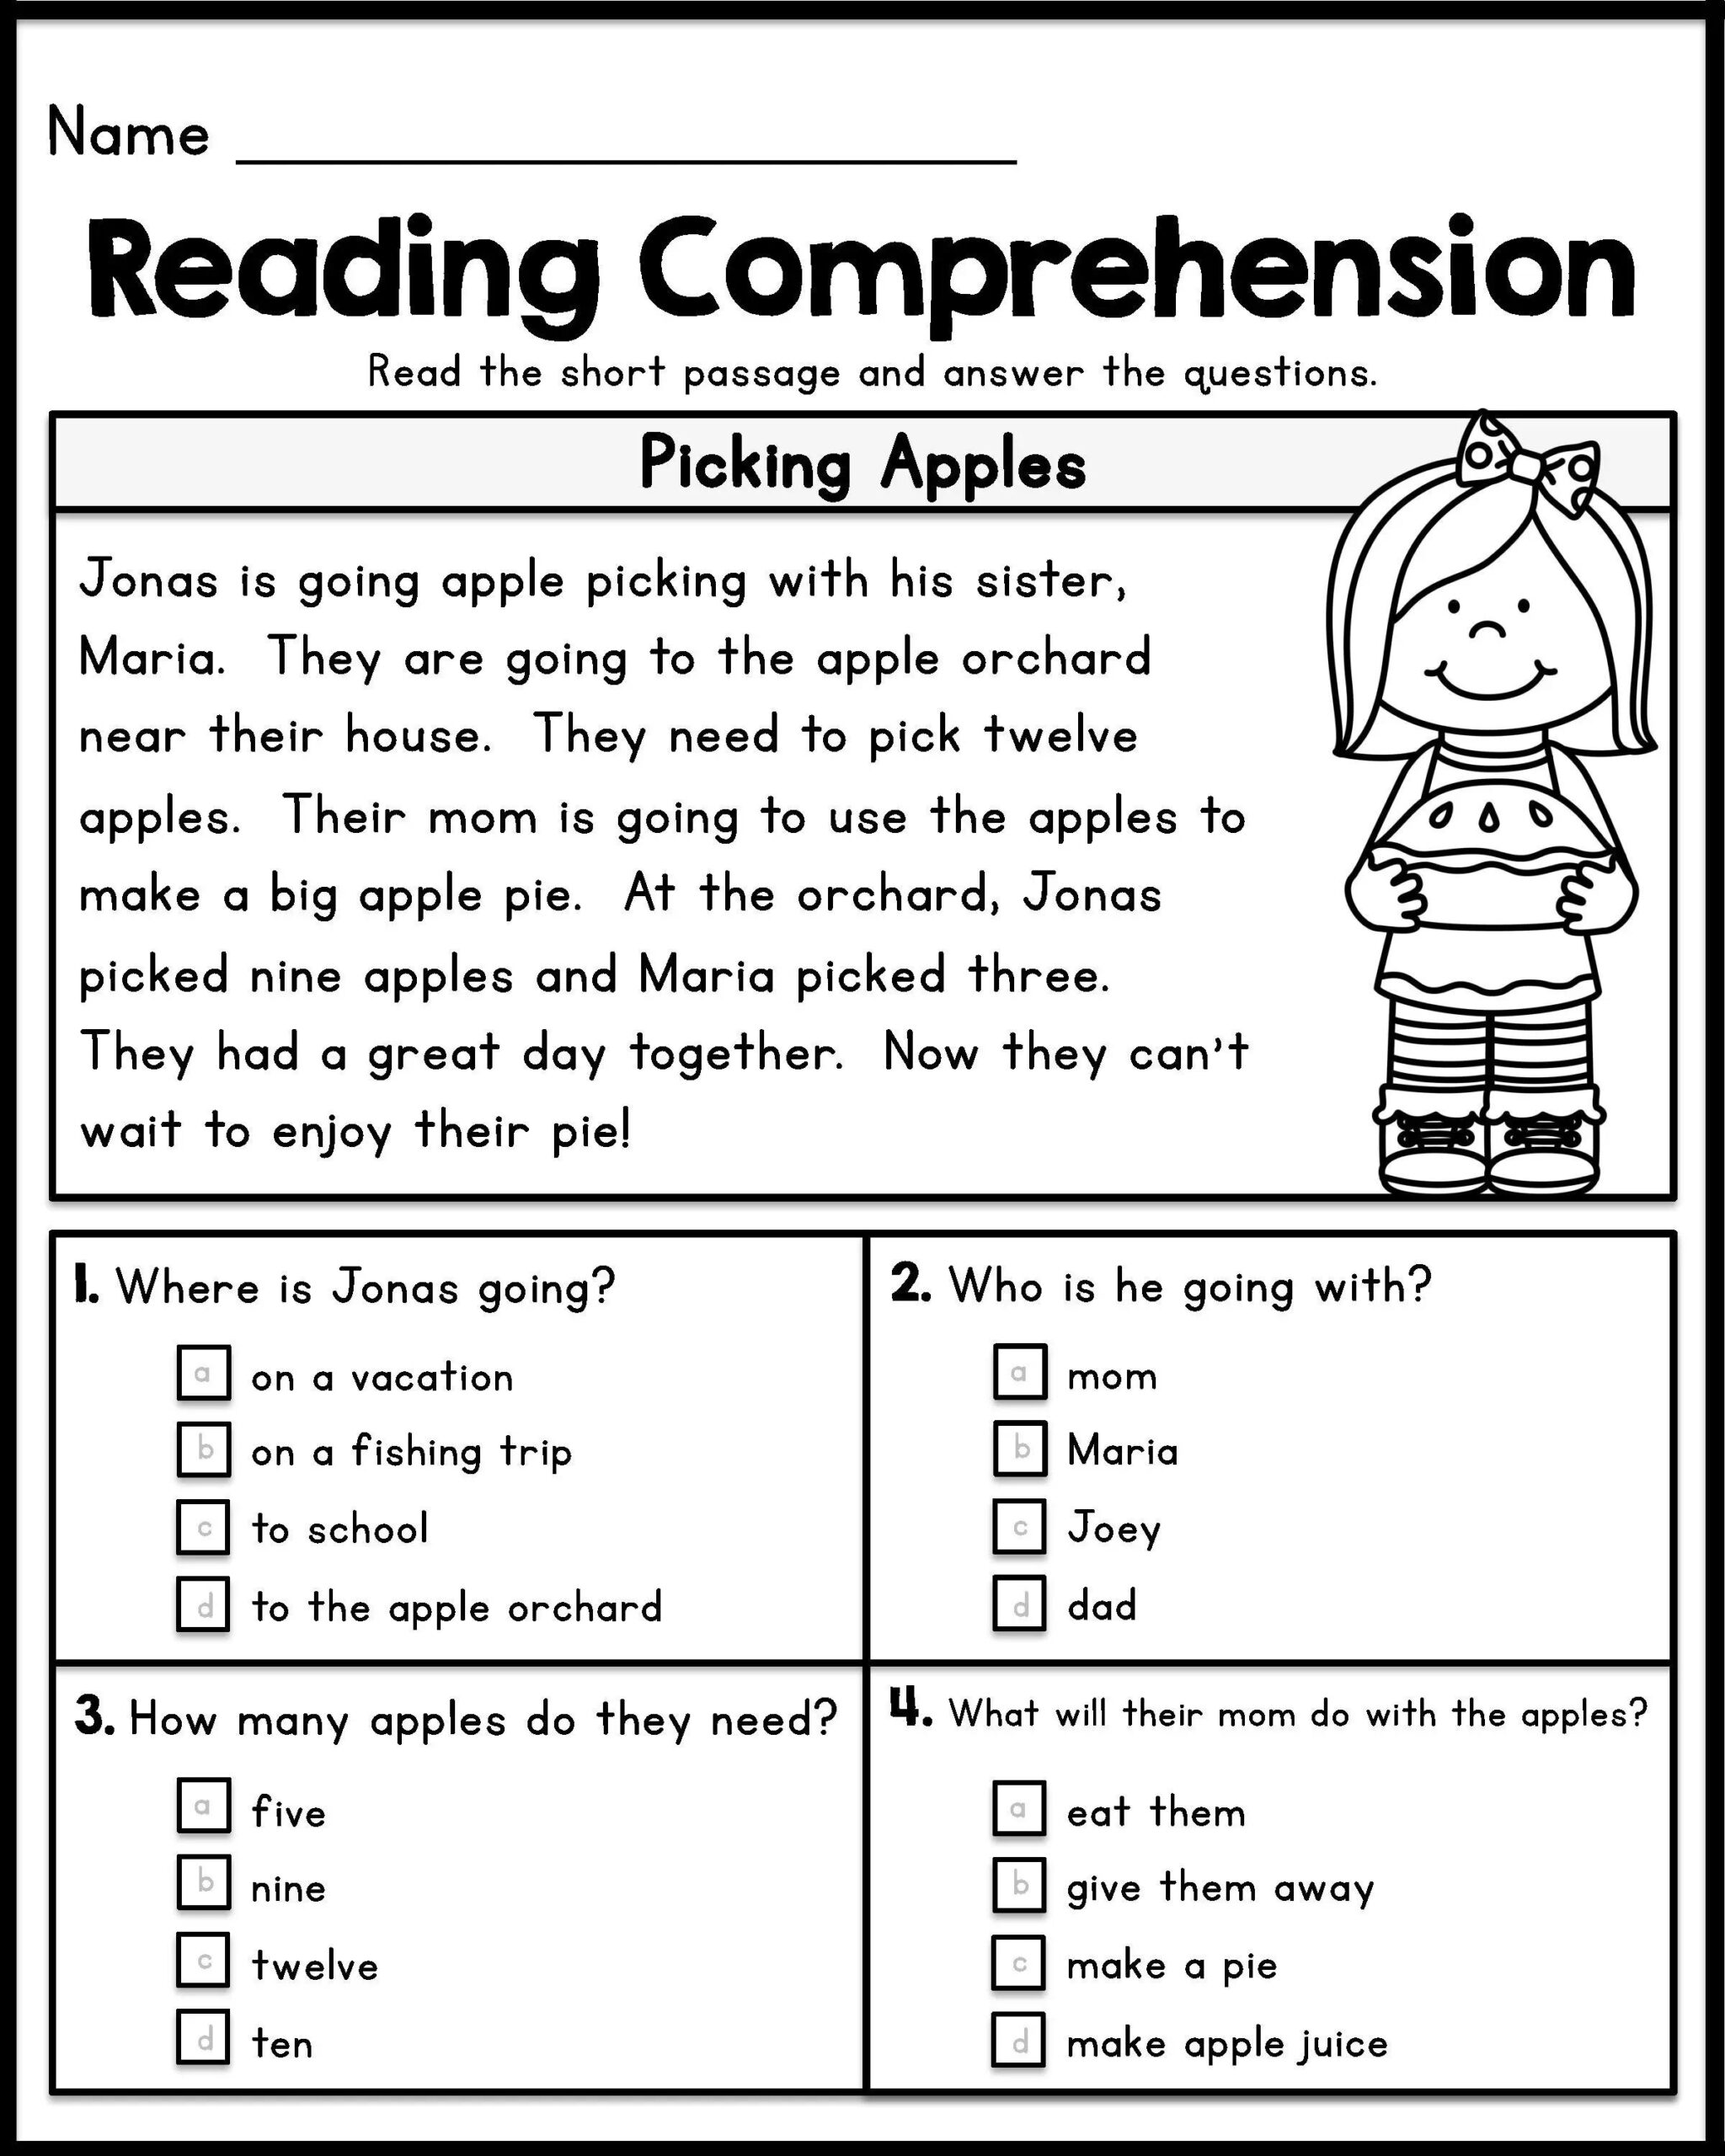 reading-comprehension-worksheets-grade-1-reading-comprehension-worksheets